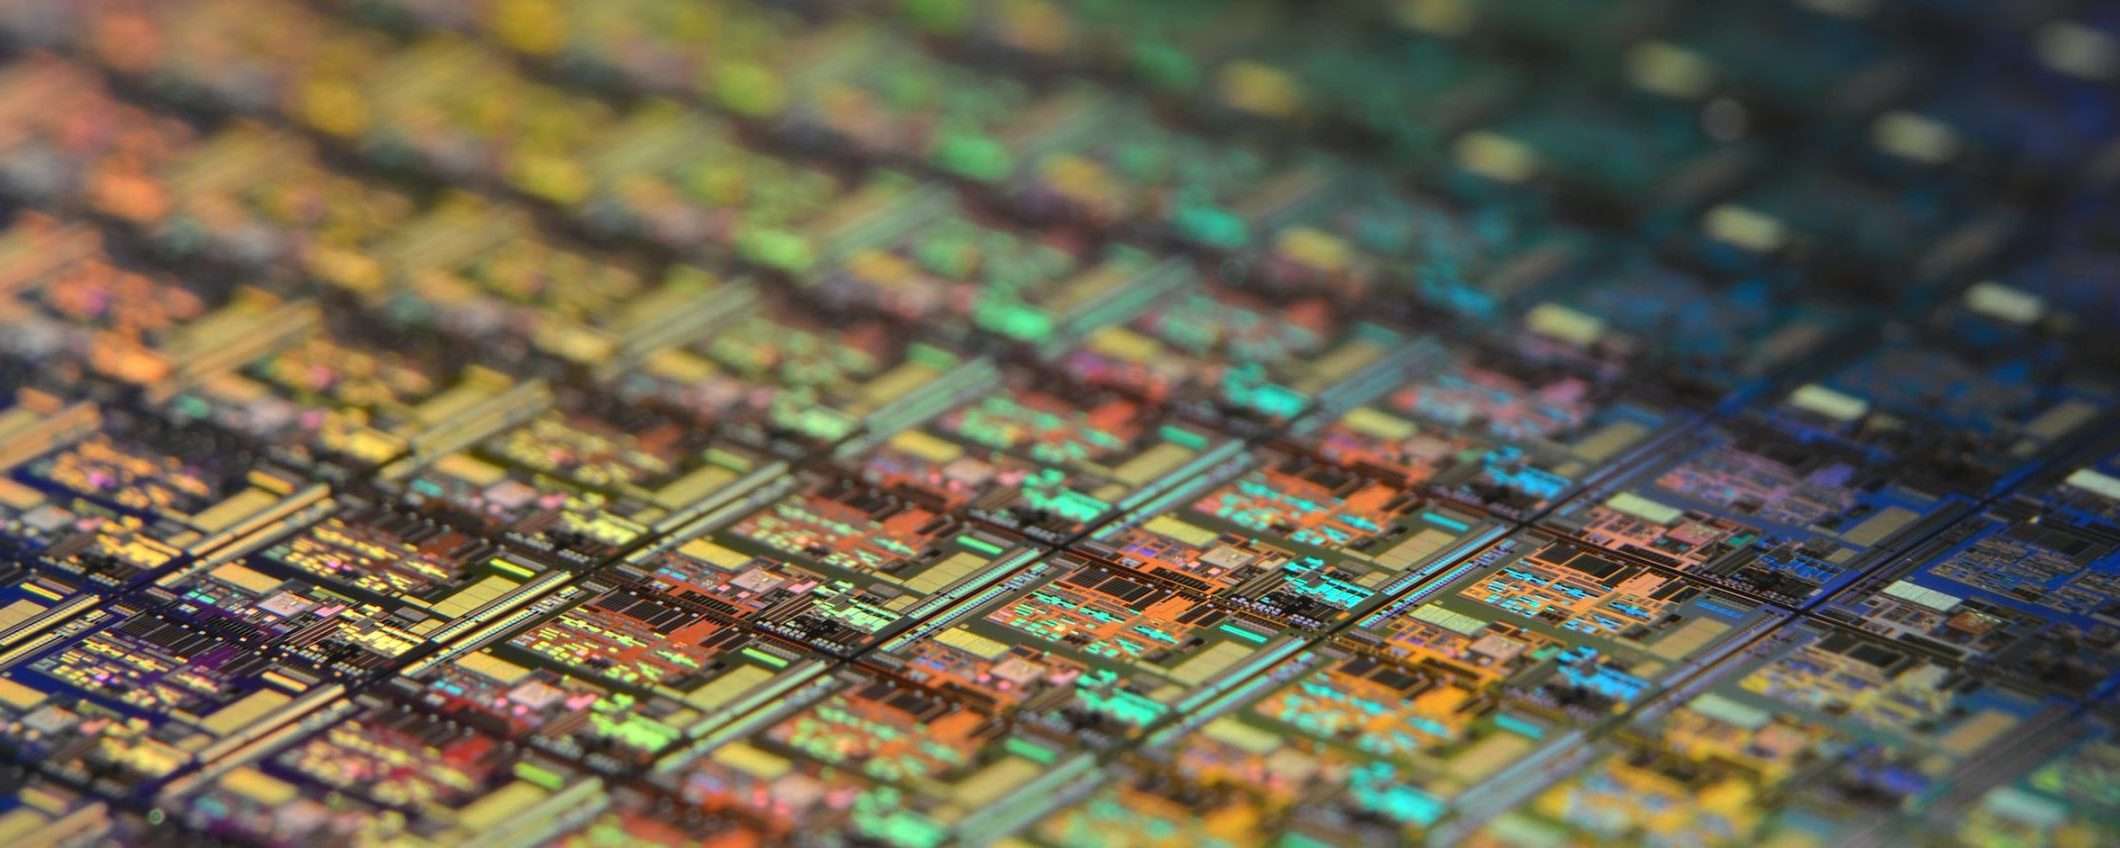 Apple: unica azienda con chip a 3 nm nel 2023?